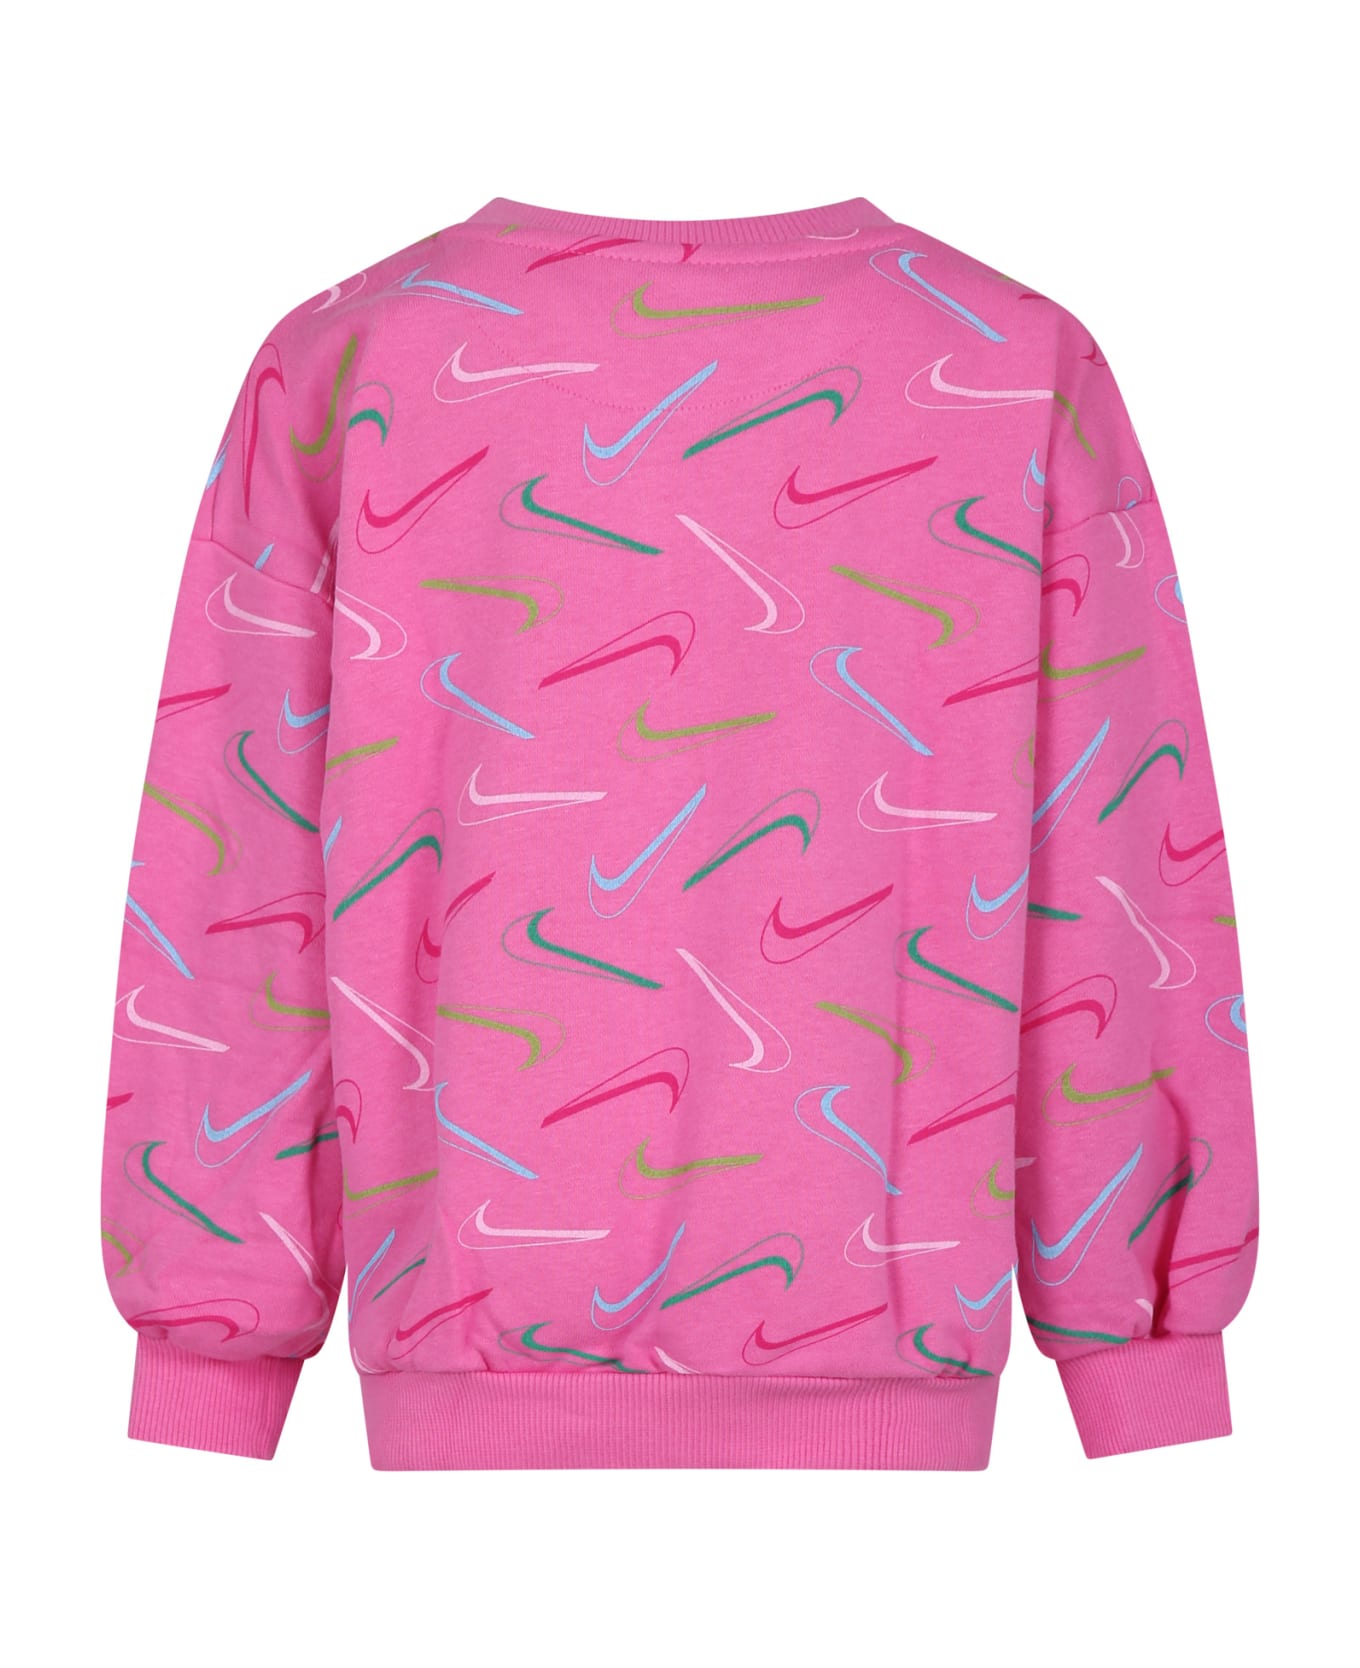 Nike Fuchsia Sweatshirt For Girl With Iconic Swoosh - Fuchsia